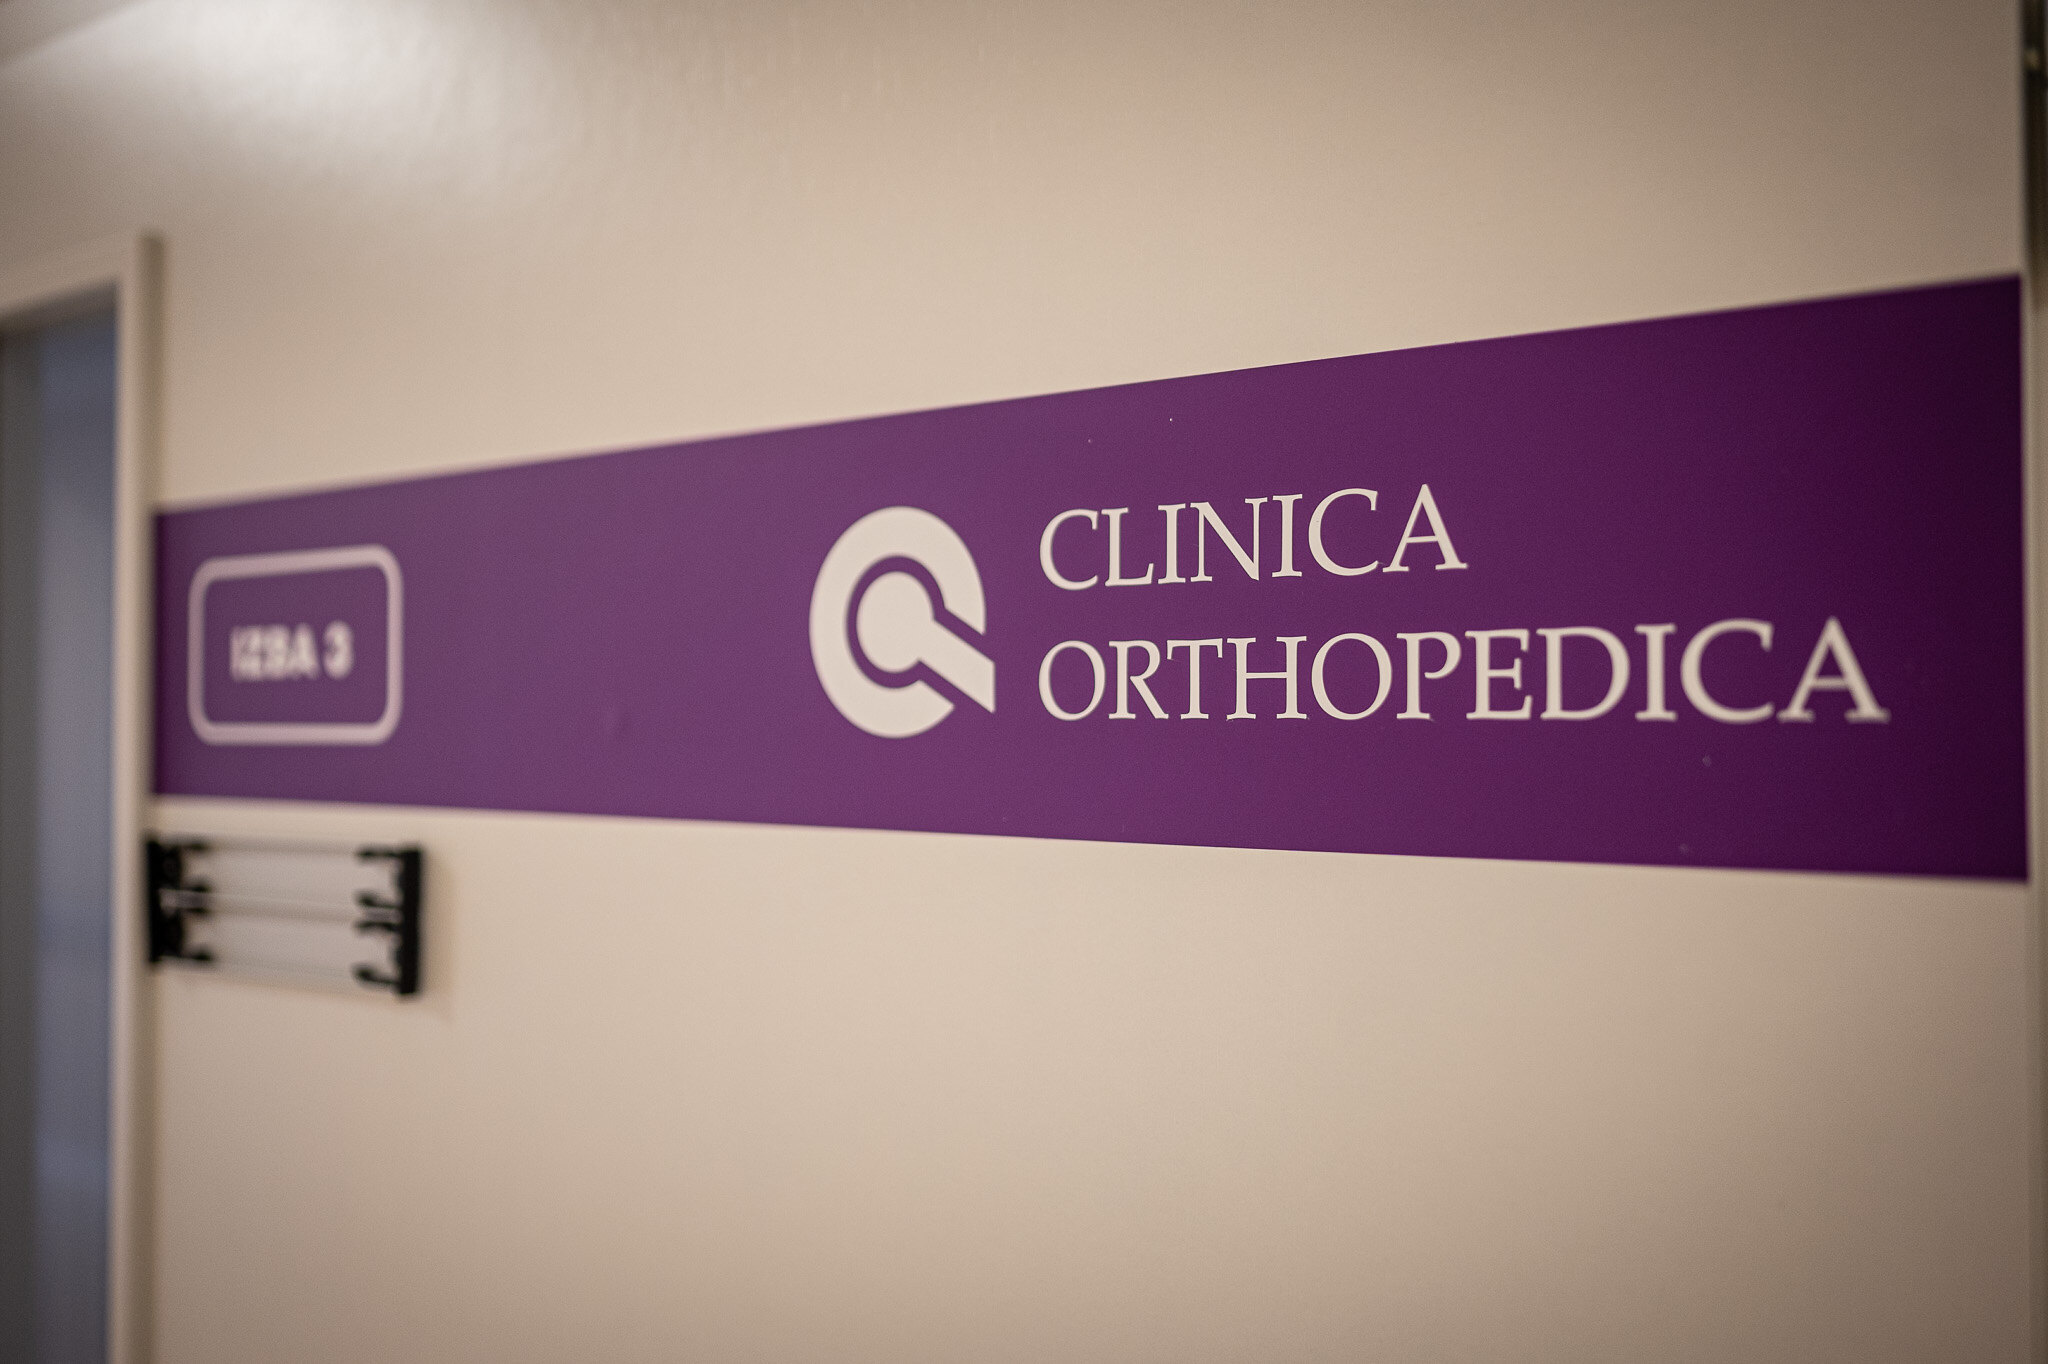 specializovana-ortopedicka-nemocnica-clinica-orthopica-pristupila-po-10-rokoch-ku-komplexnej-rekonstrukcii